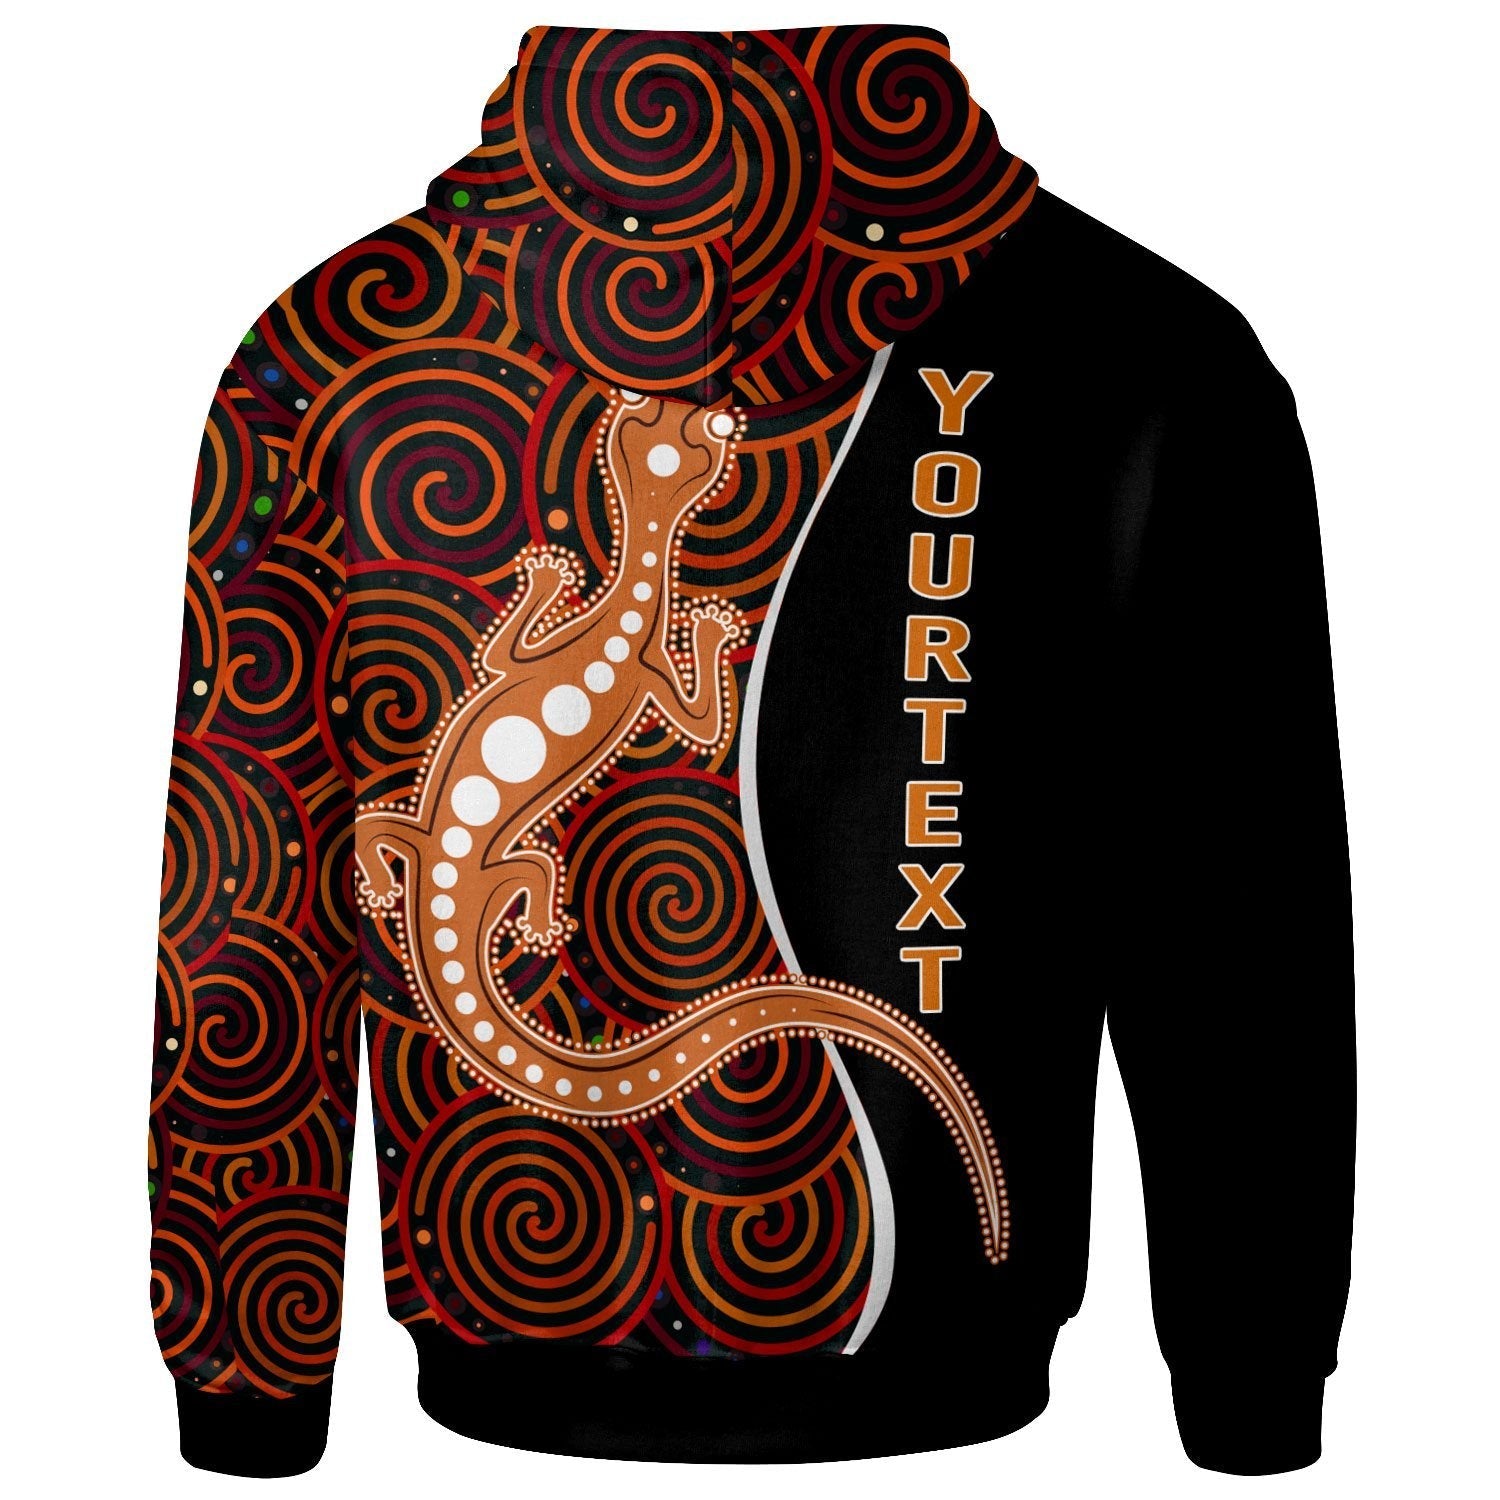 aboriginal-personalised-zip-up-hoodie-indigenous-lizard-dreaming